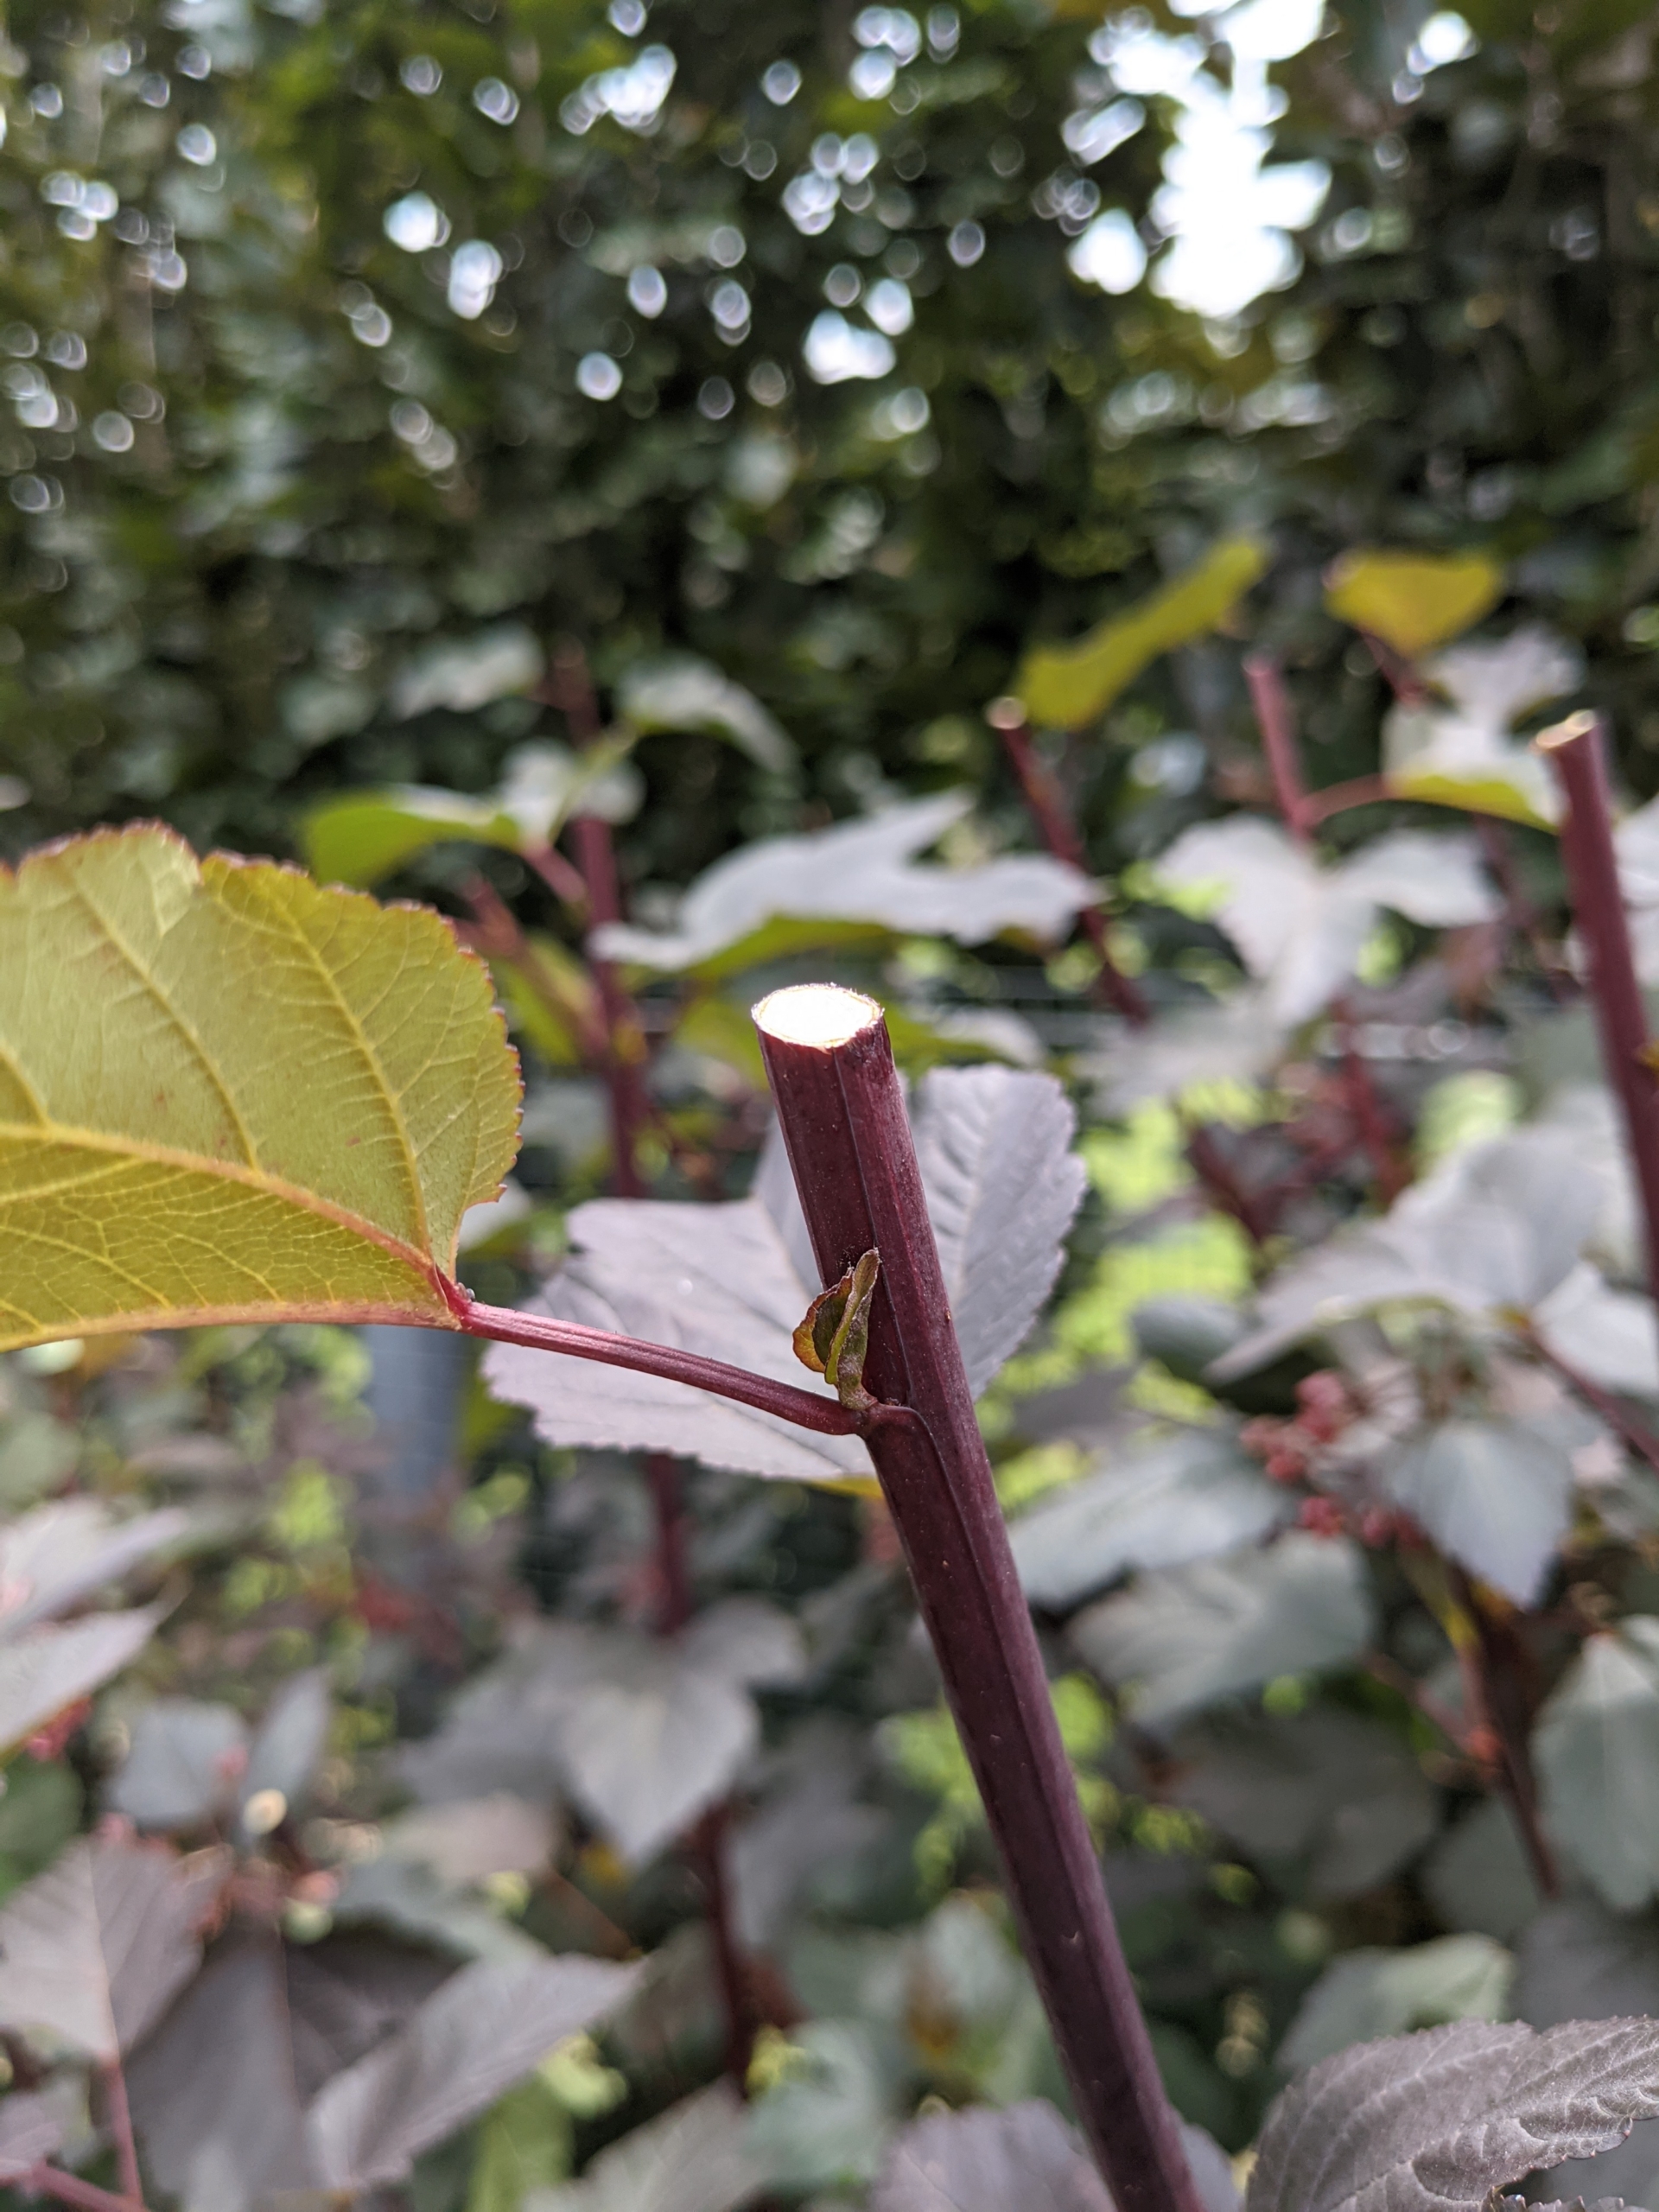 Sharpening Garden Pruners - The Martha Stewart Blog